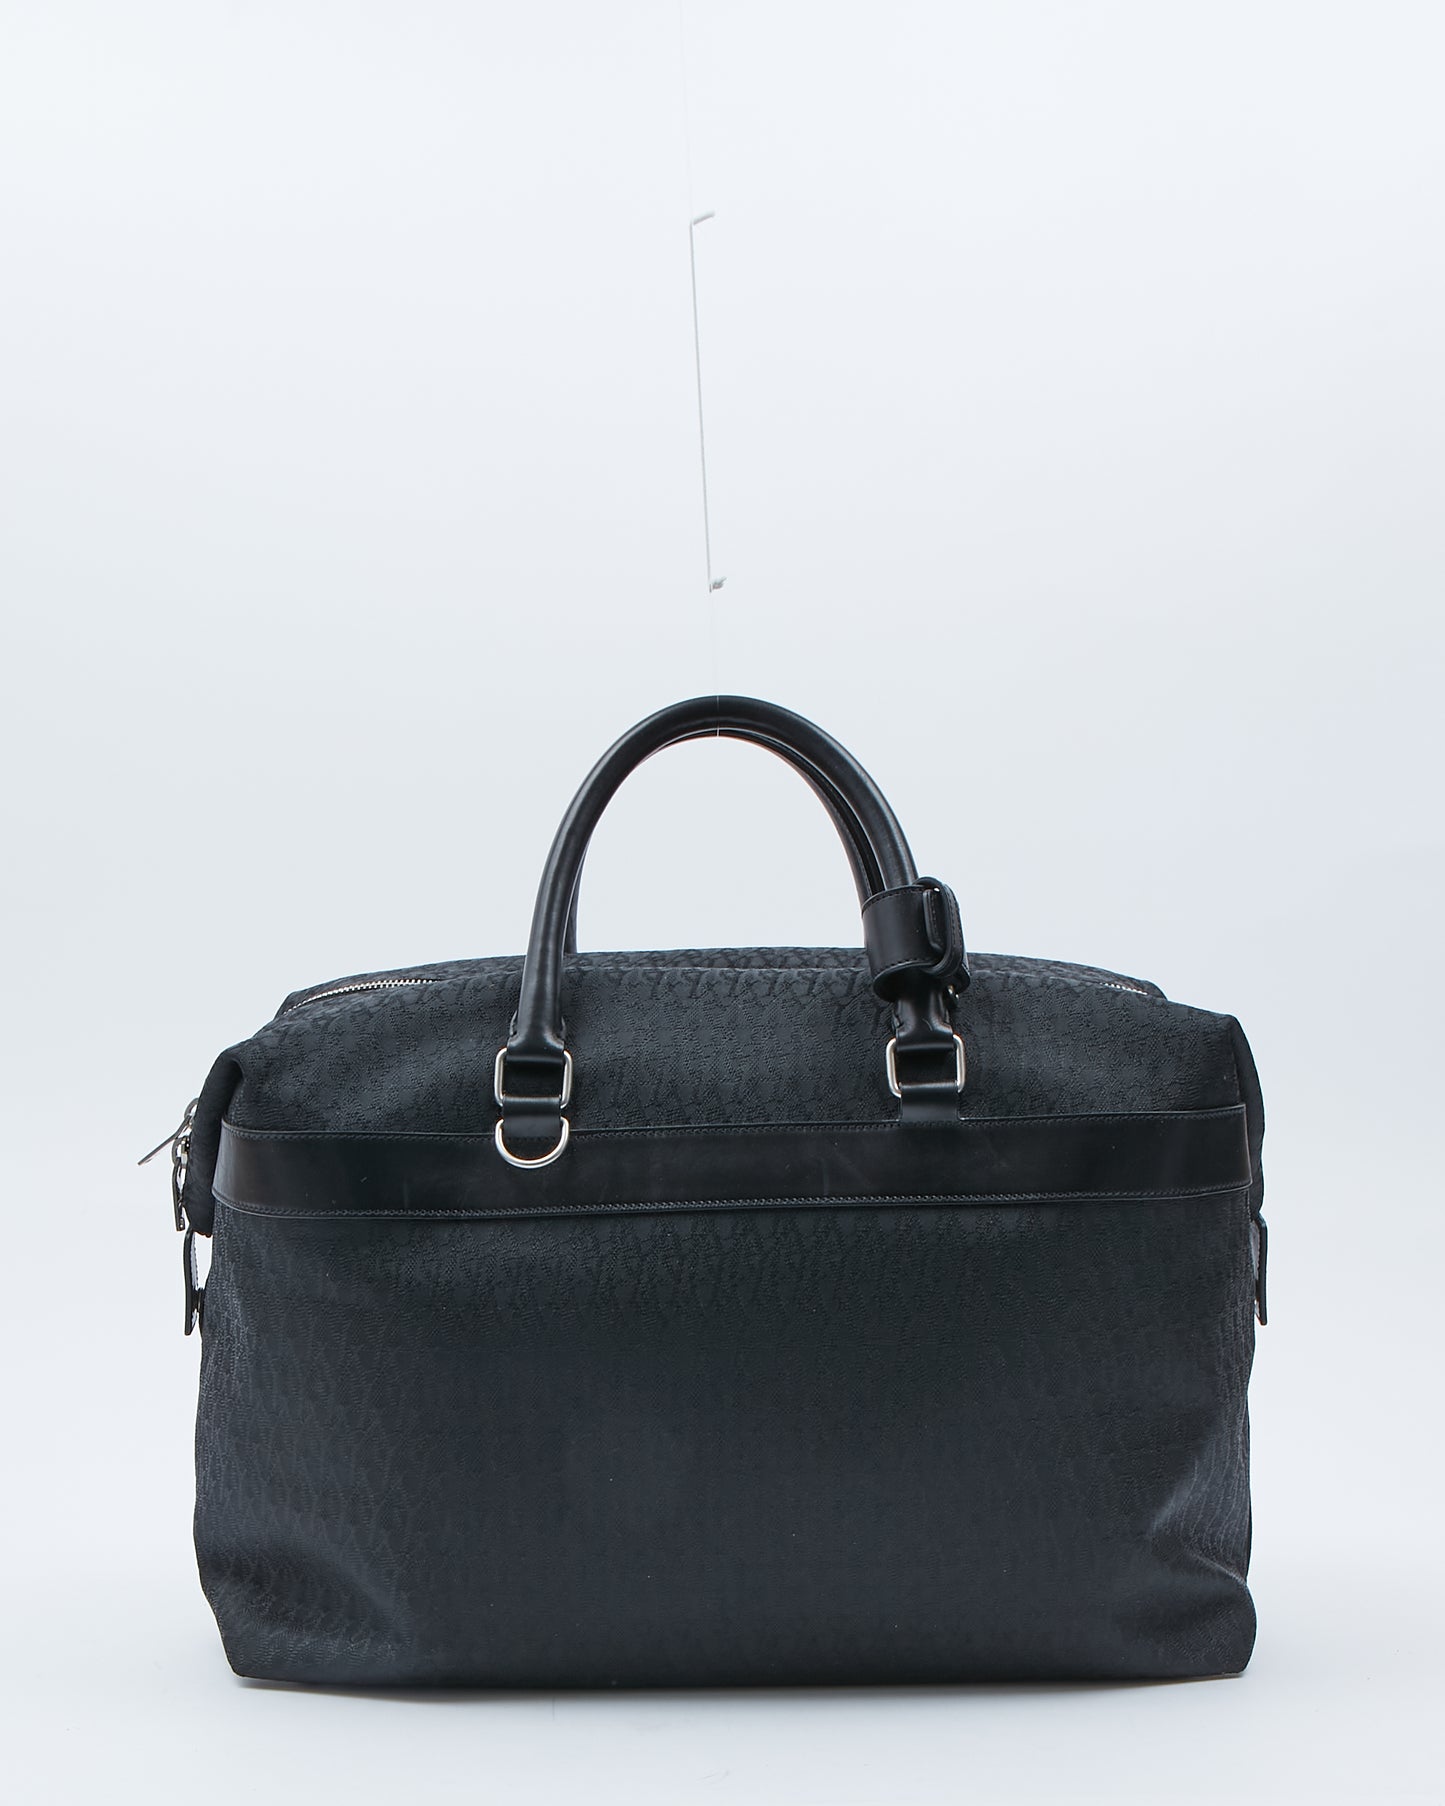 Saint Laurent Monogram Canvas & Leather Travel Duffle Bag